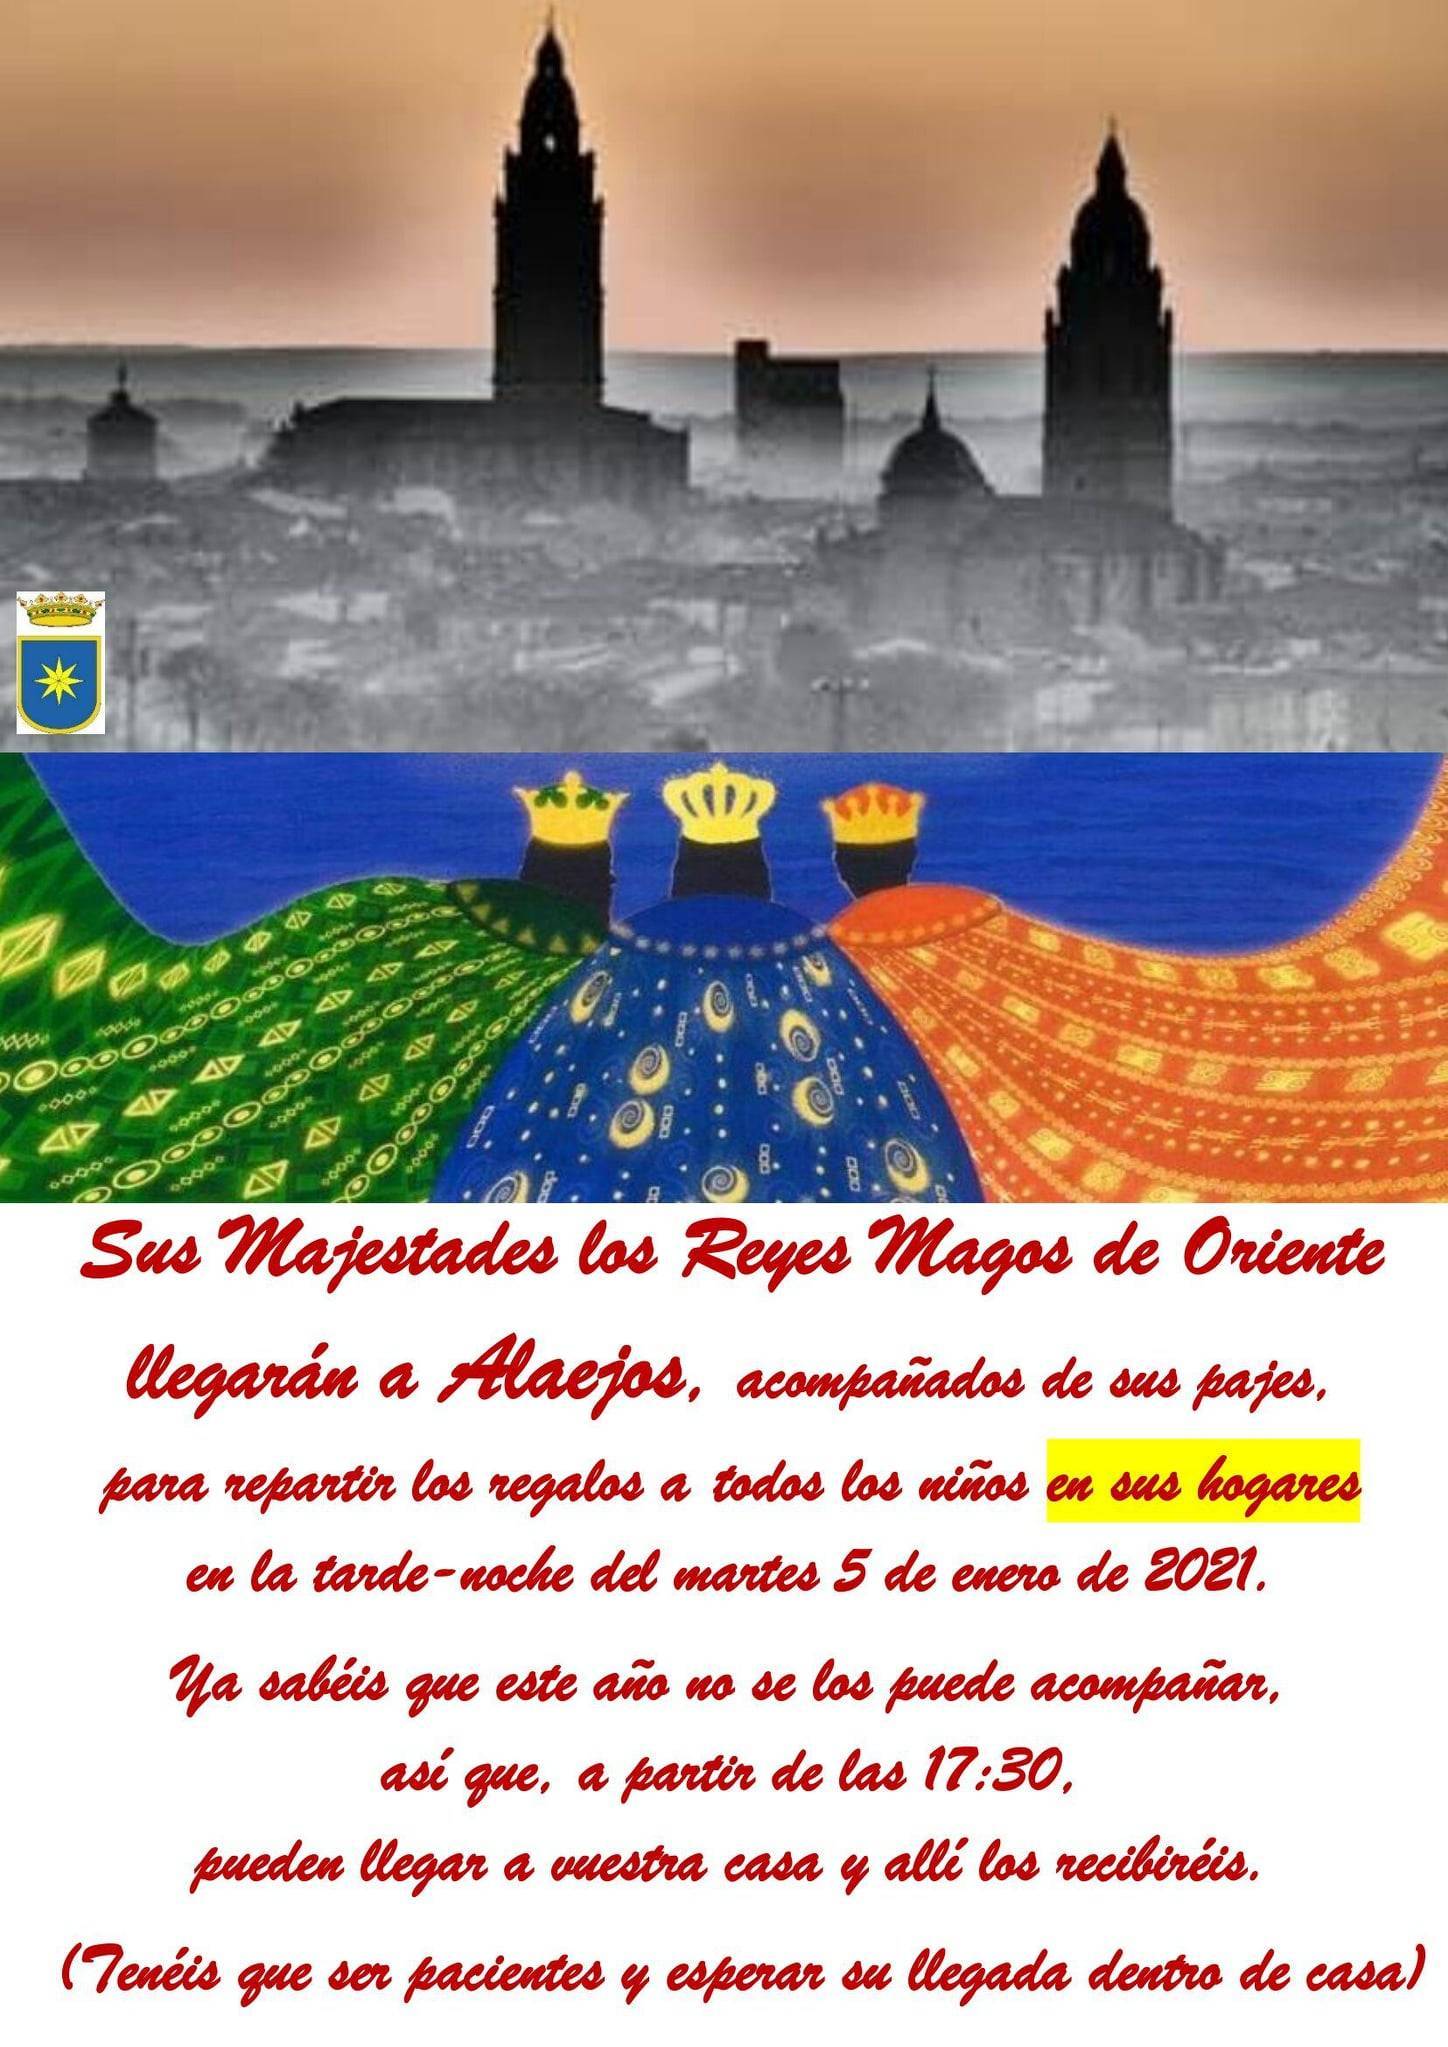 Reyes Magos (2021) - Alaejos (Valladolid)